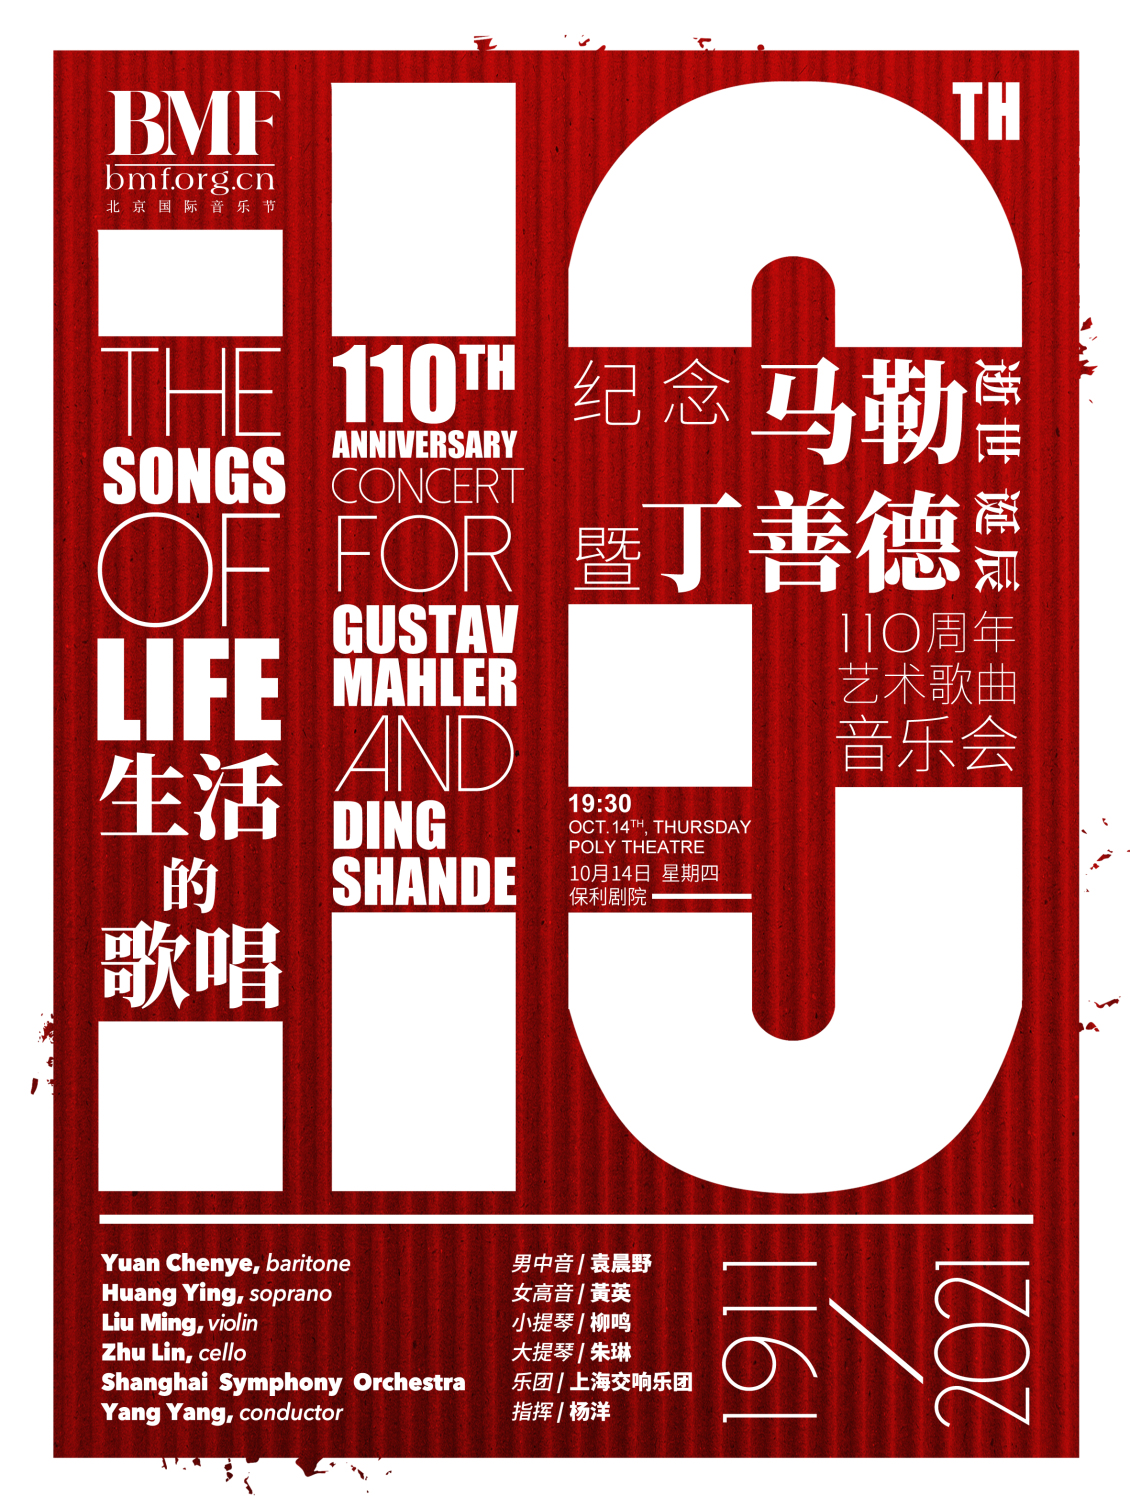 淘宝美工小李爱设计北京国际音乐节海报作品